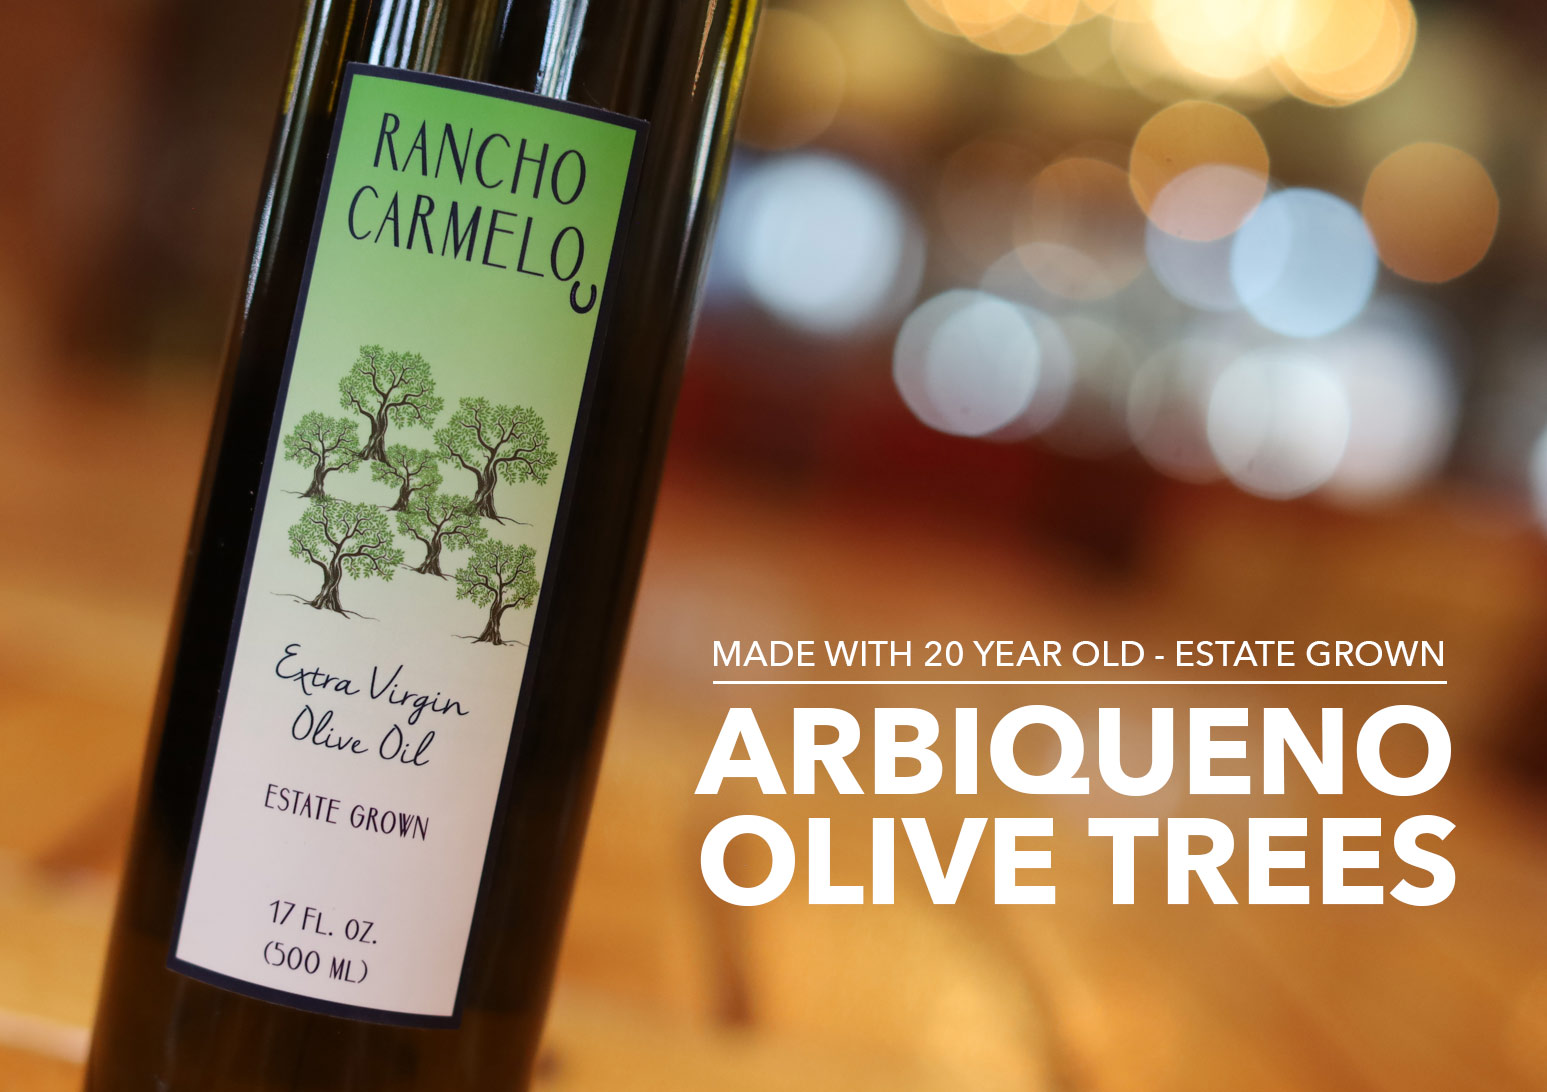 Olive Oil Estate Grown